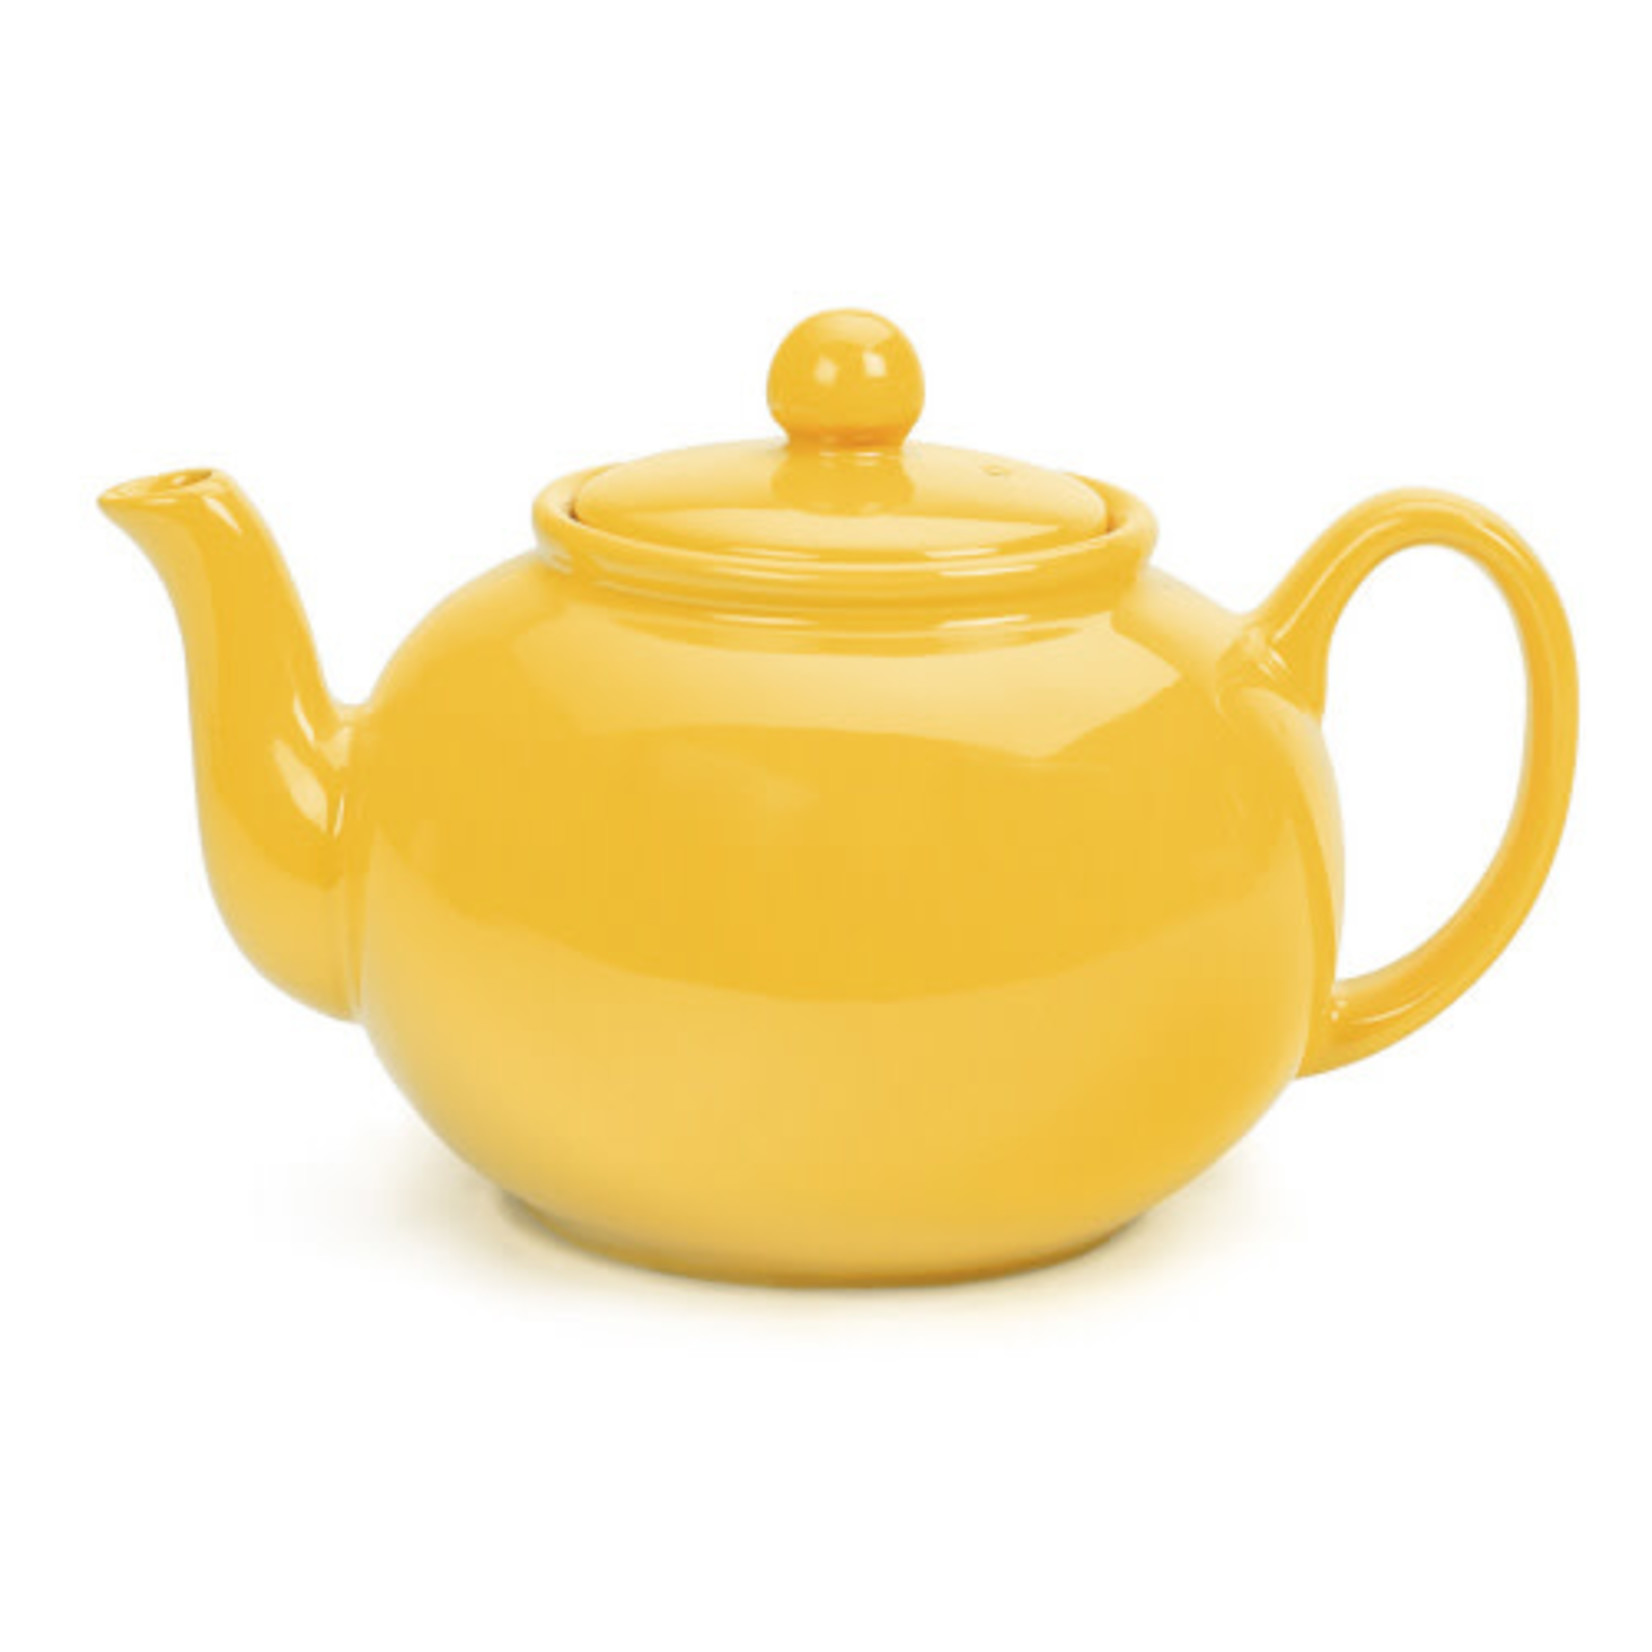 RSVP Stoneware Teapot